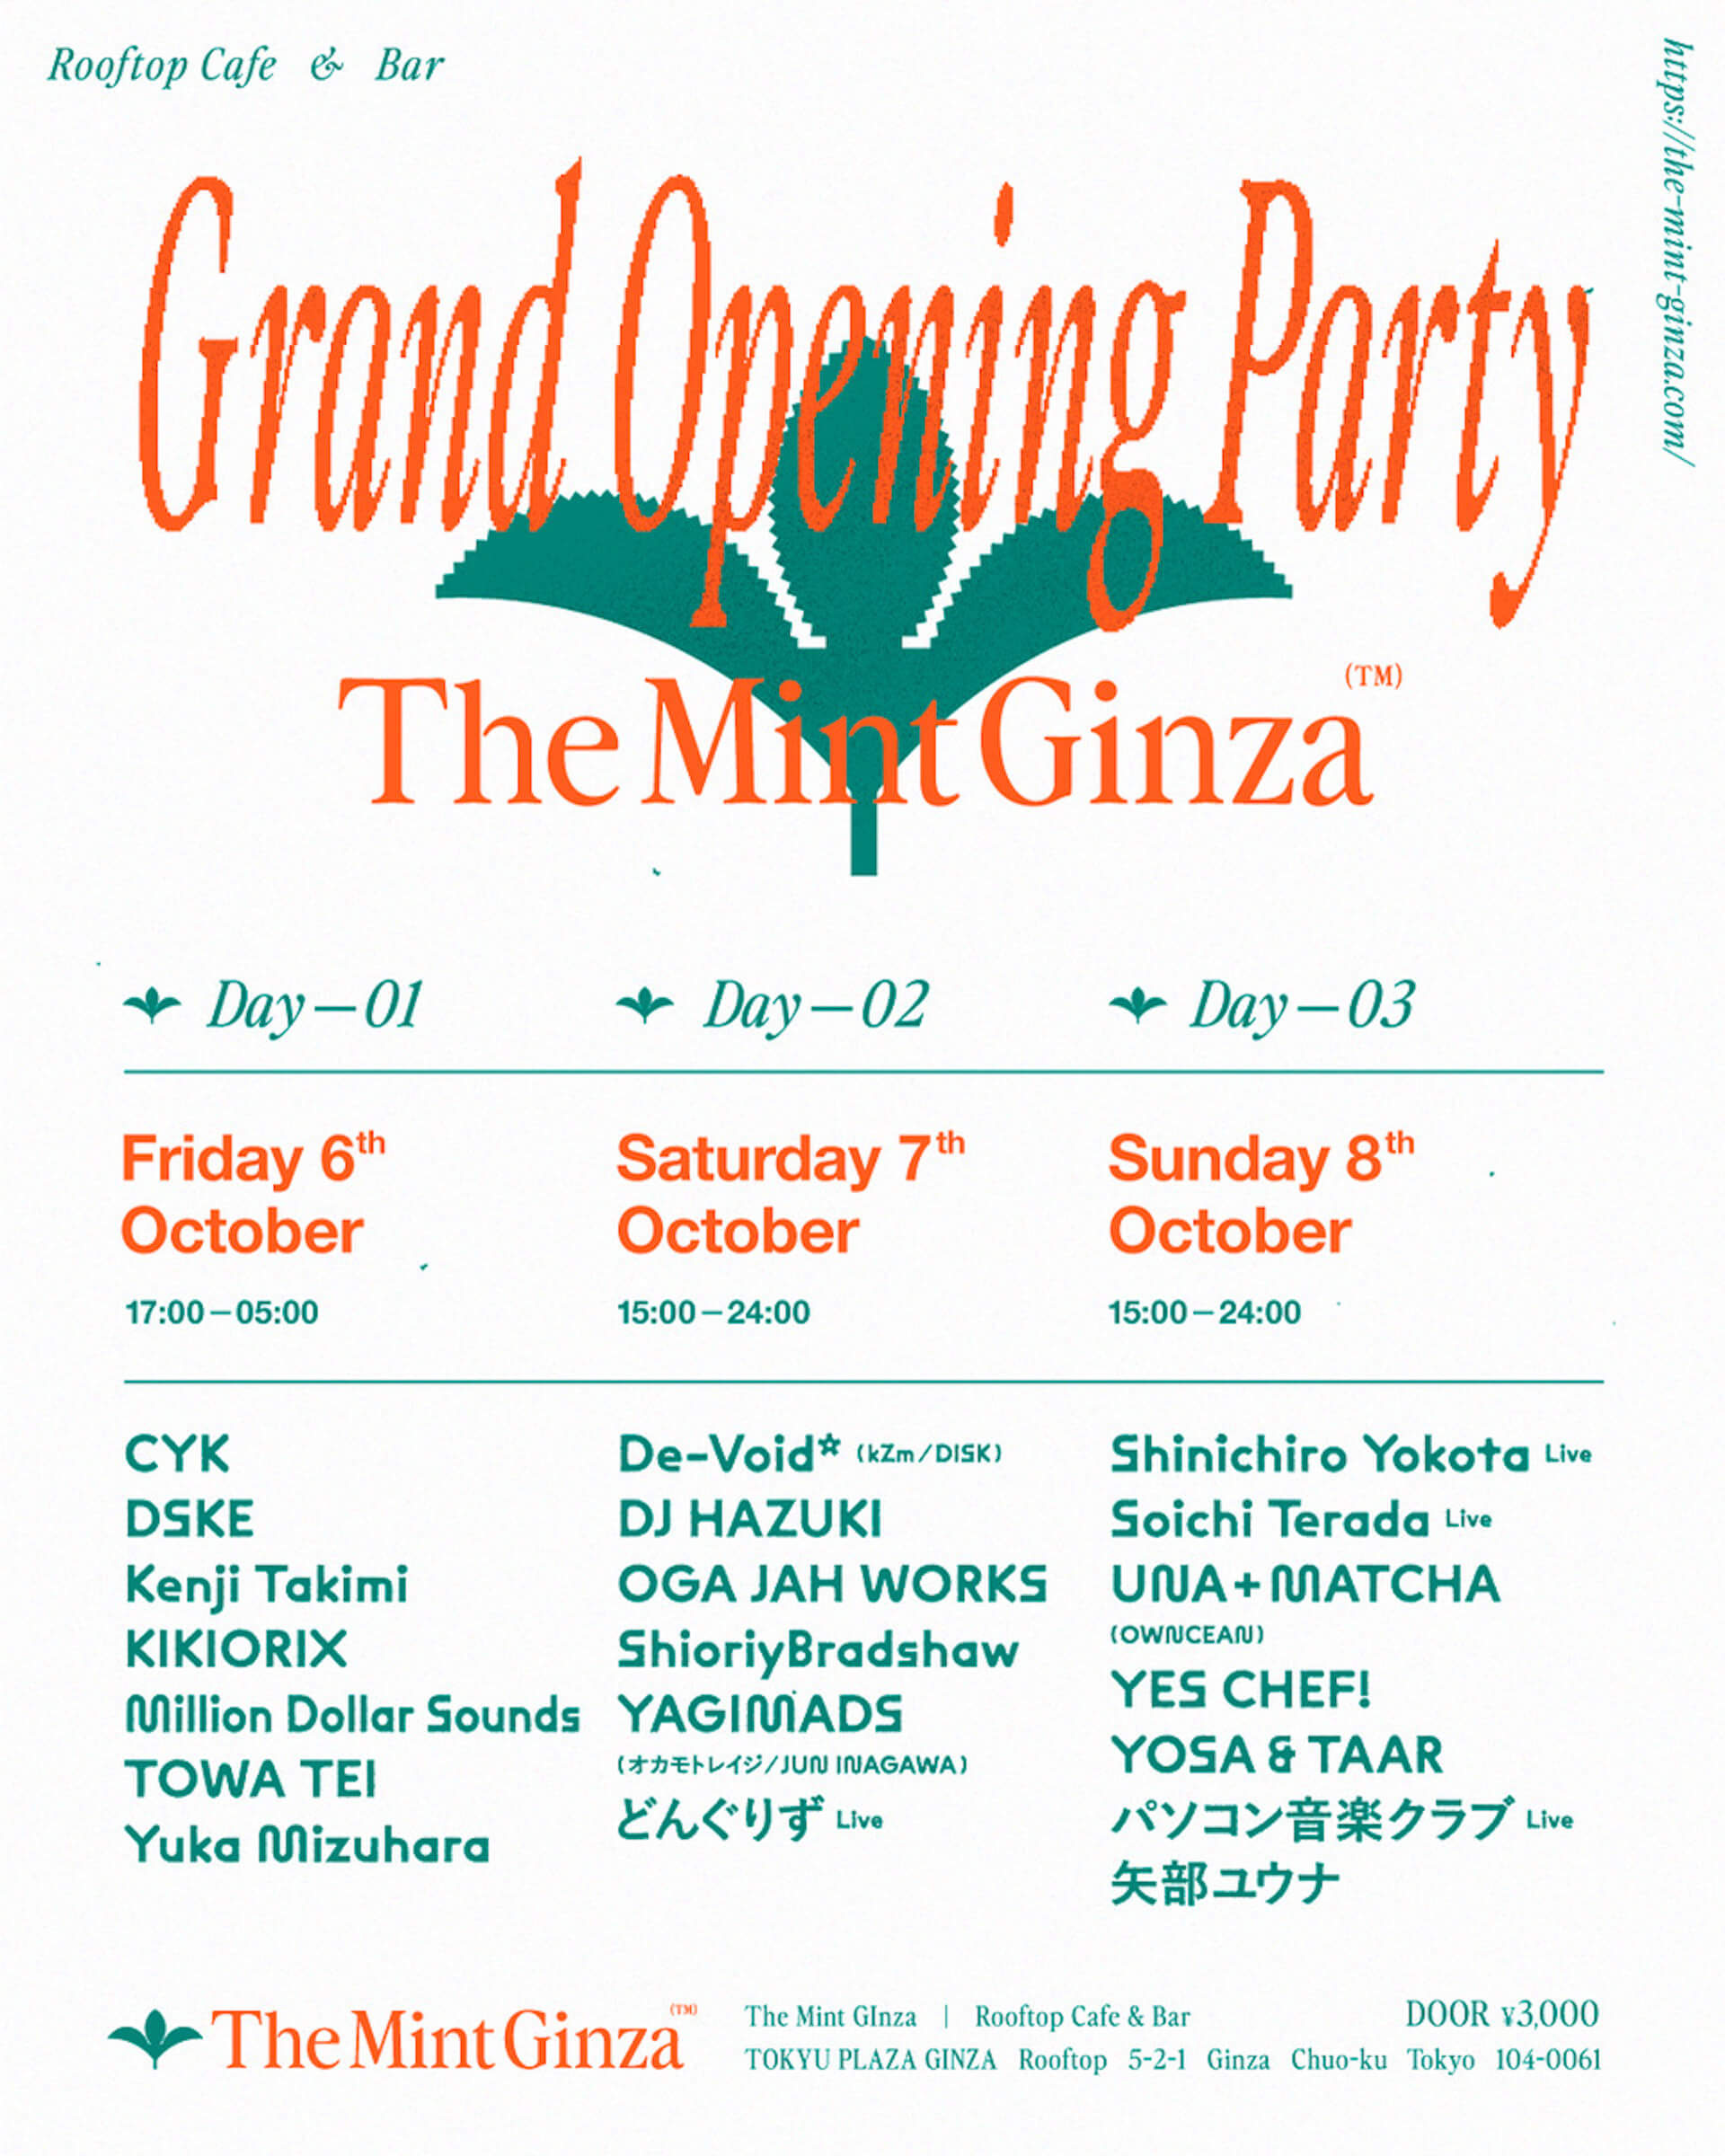 東急プラザ銀座の屋上、日本最大級のルーフトップ・カフェ&バー「The Mint Ginza」OPパーティーにTOWA TEI、Kenji Takimi、どんぐりず、パソコン音楽クラブらが出演 music231005-the-mint-ginza4